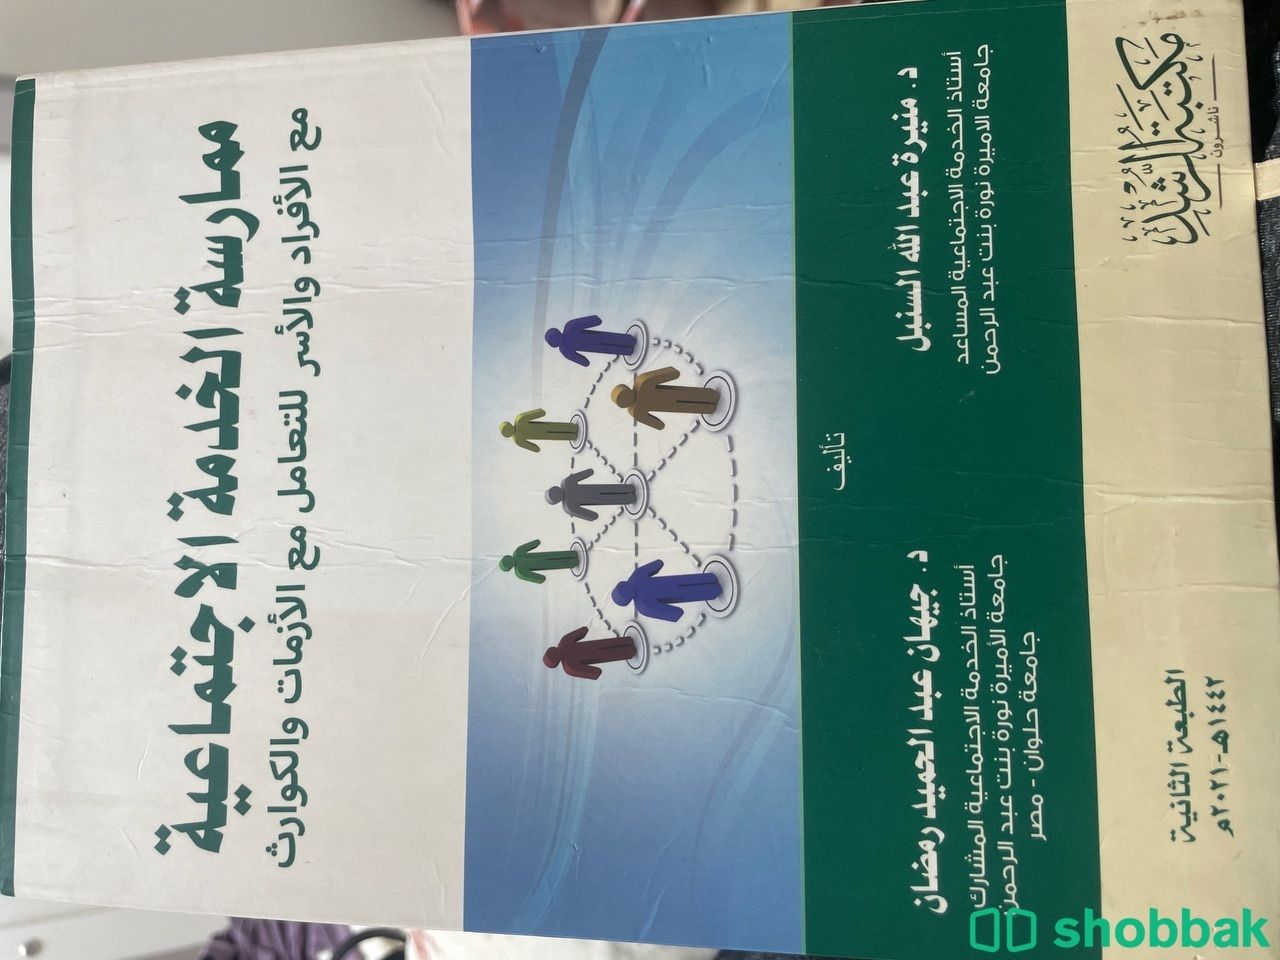 كتاب الخدمة الاجتماعية مع الازمات والكوارث شباك السعودية